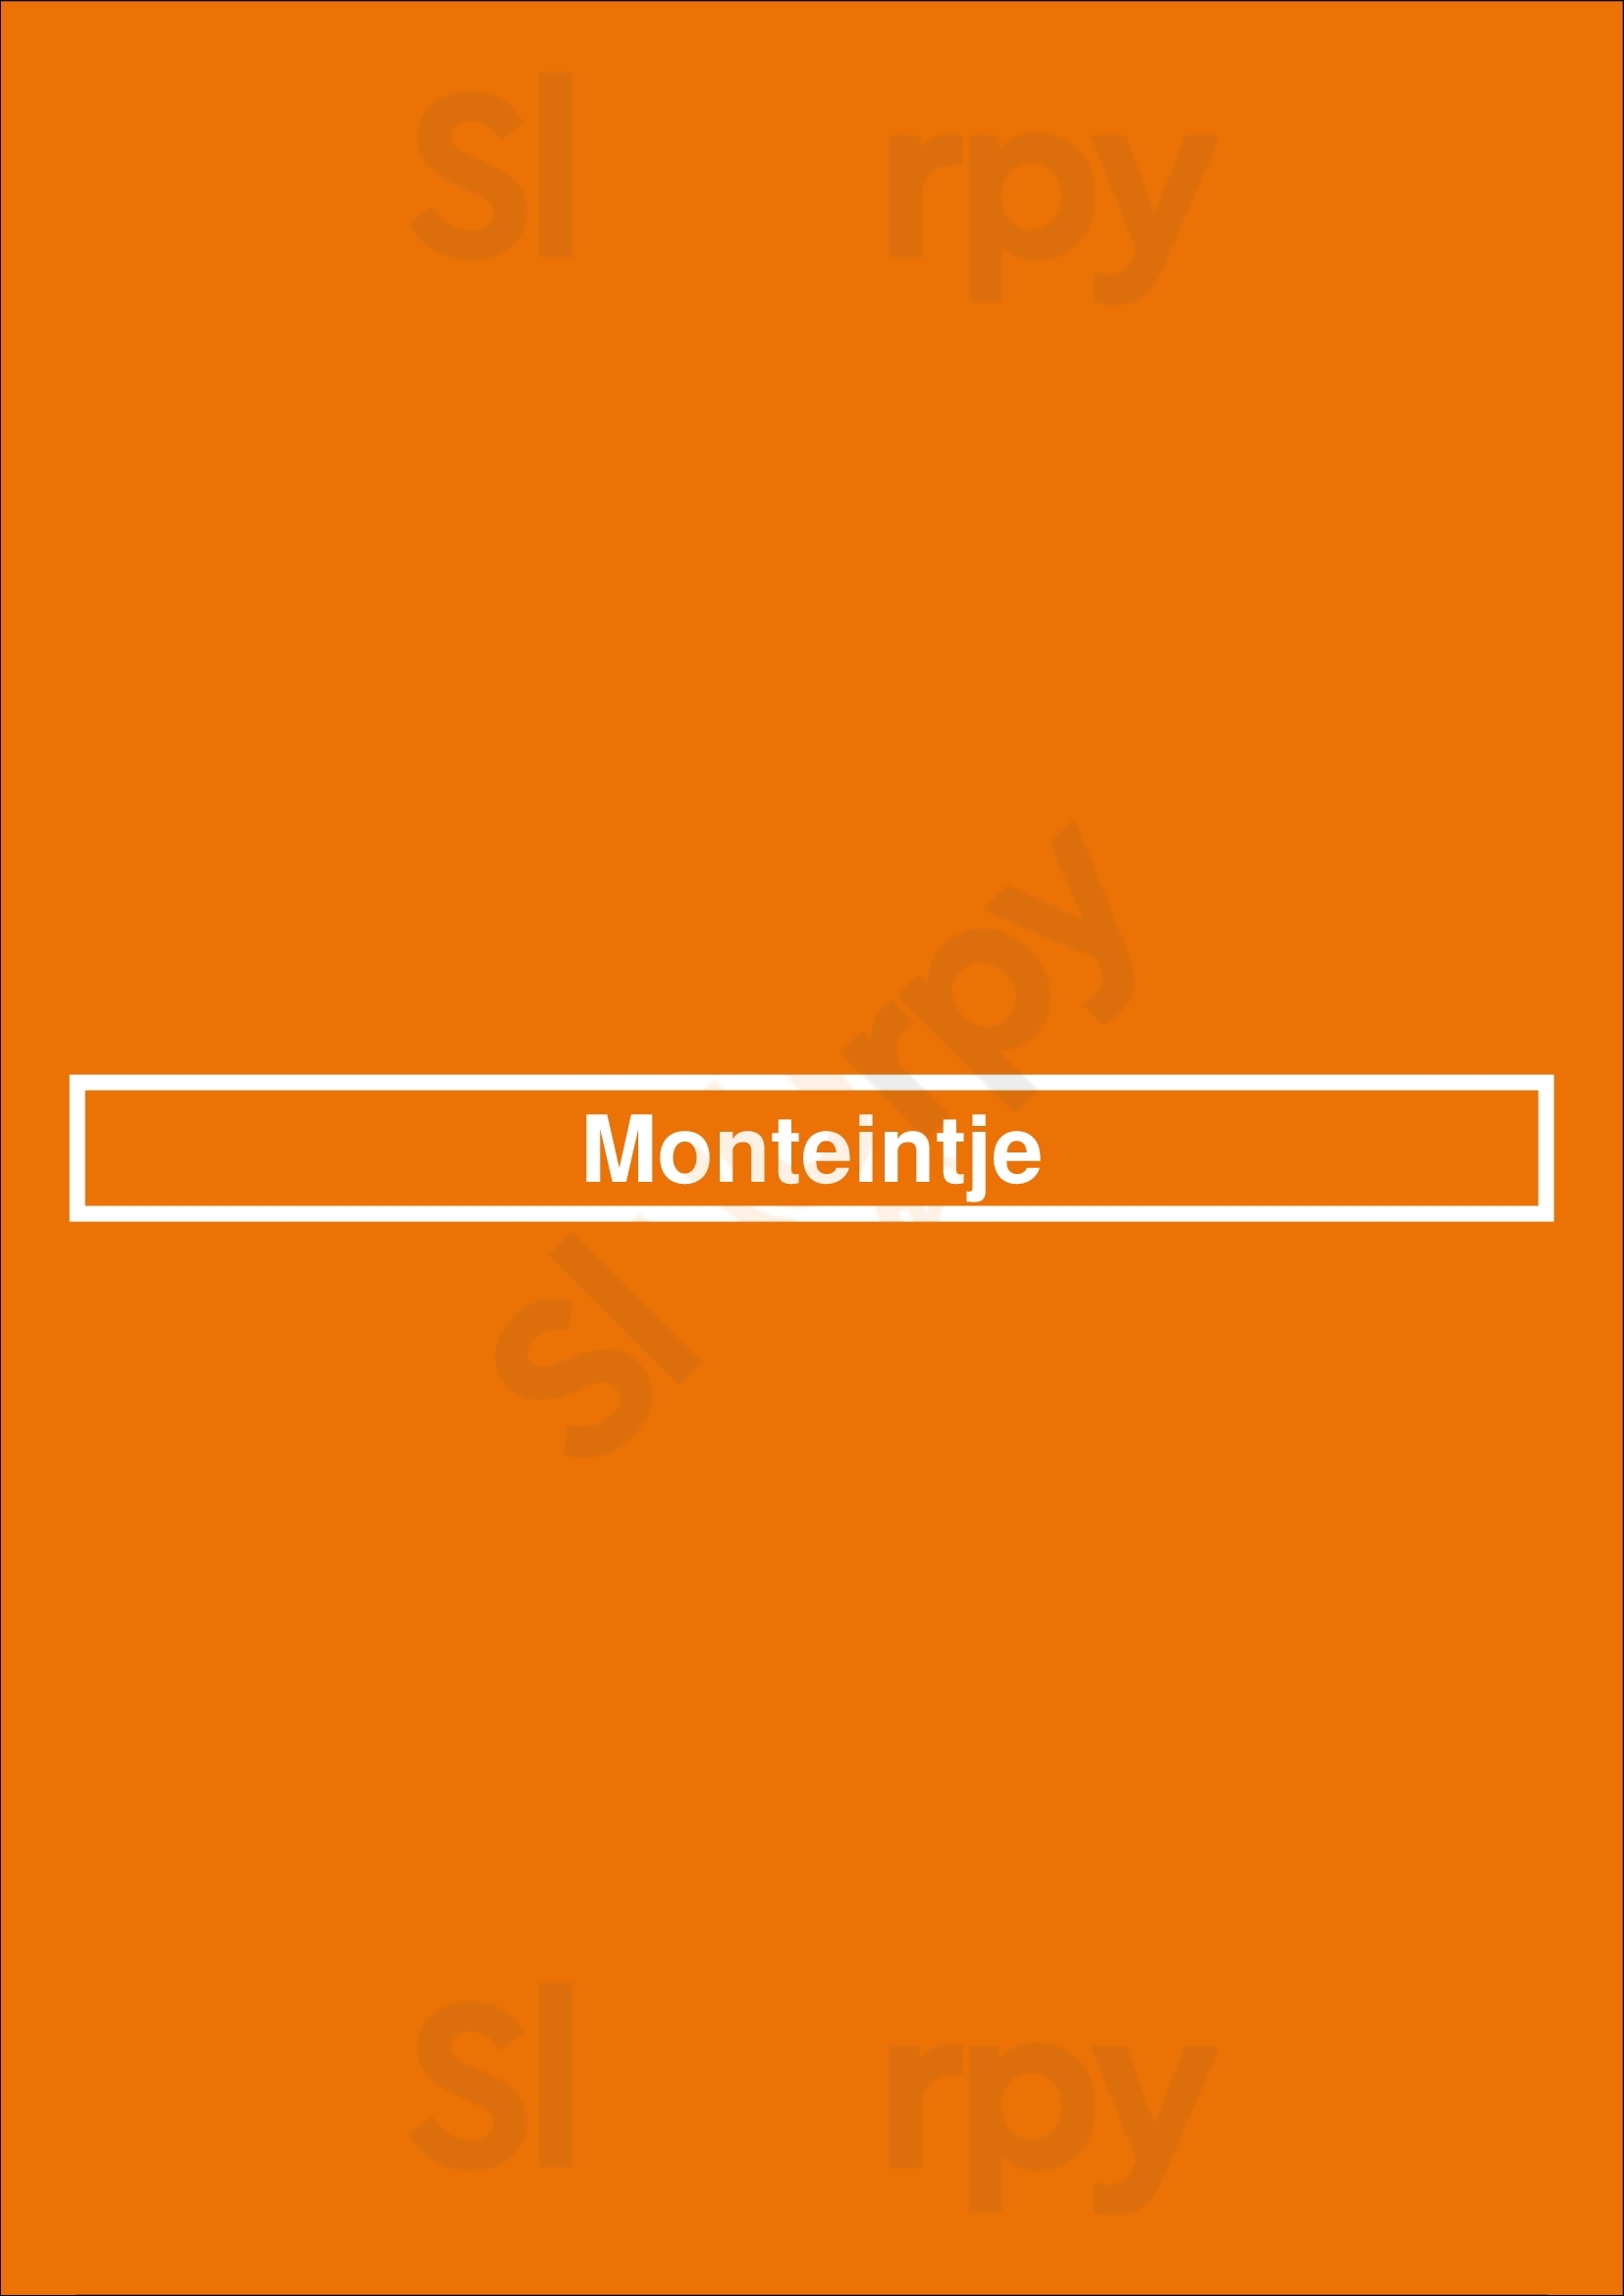 Monteintje Bruges Menu - 1